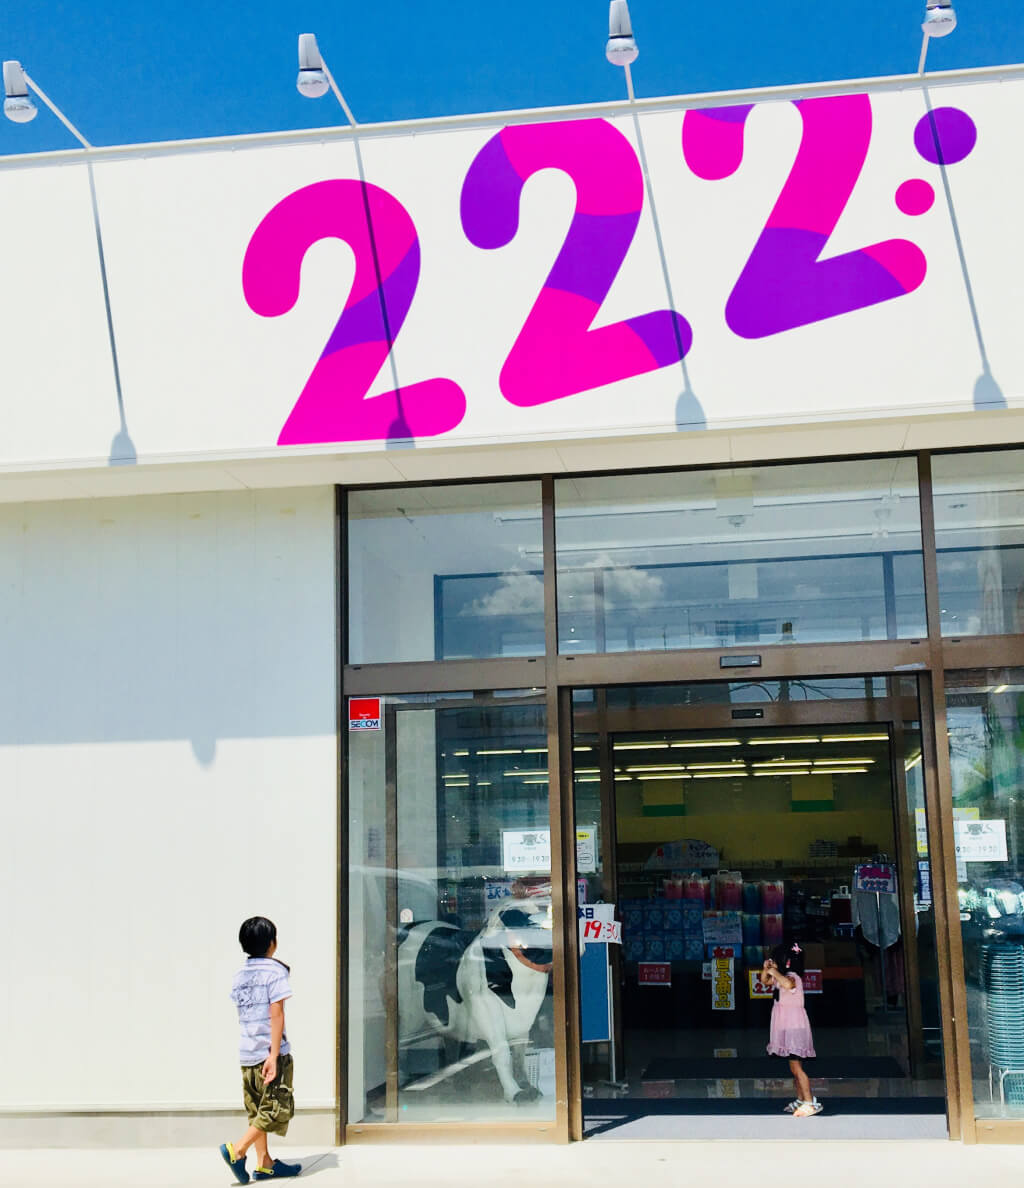 ツー 店舗 トリプル 関西から激安アウトレット店「２２２（トリプルツー）」が東京・新宿へ進出 ヘルシオ、リファ、バルミューダ、ケルヒャーなんでも半額以下: